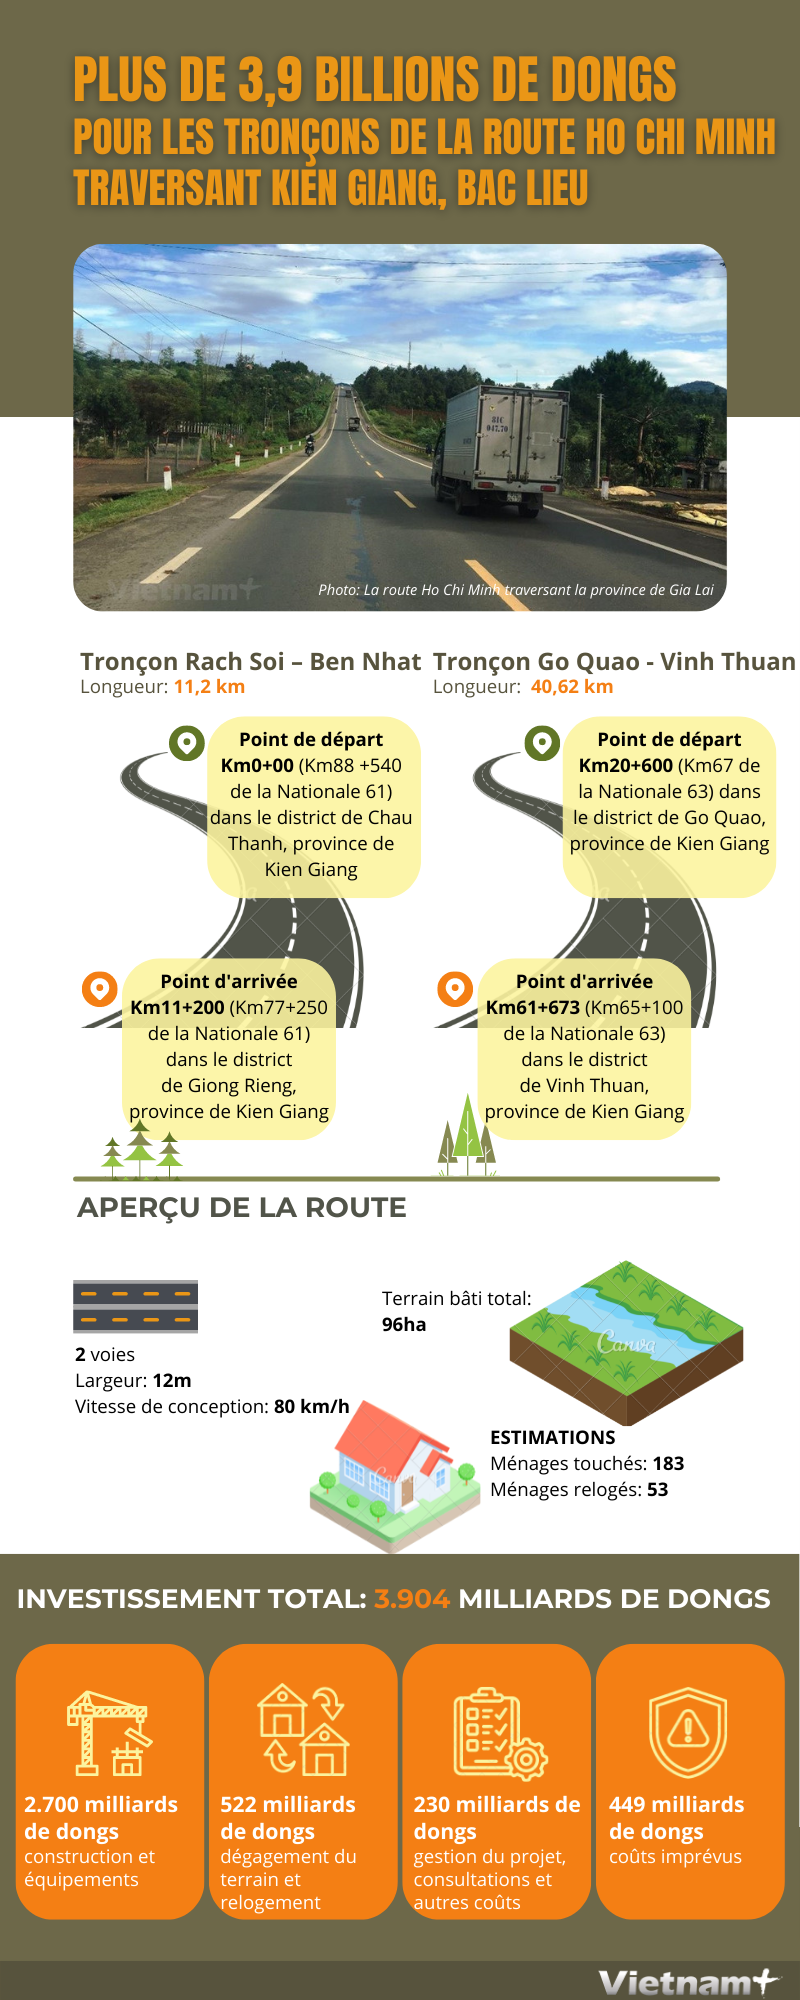 3.904 milliards de dongs pour les troncons de la route Ho Chi Minh traversant Kien Giang, Bac Lieu hinh anh 1